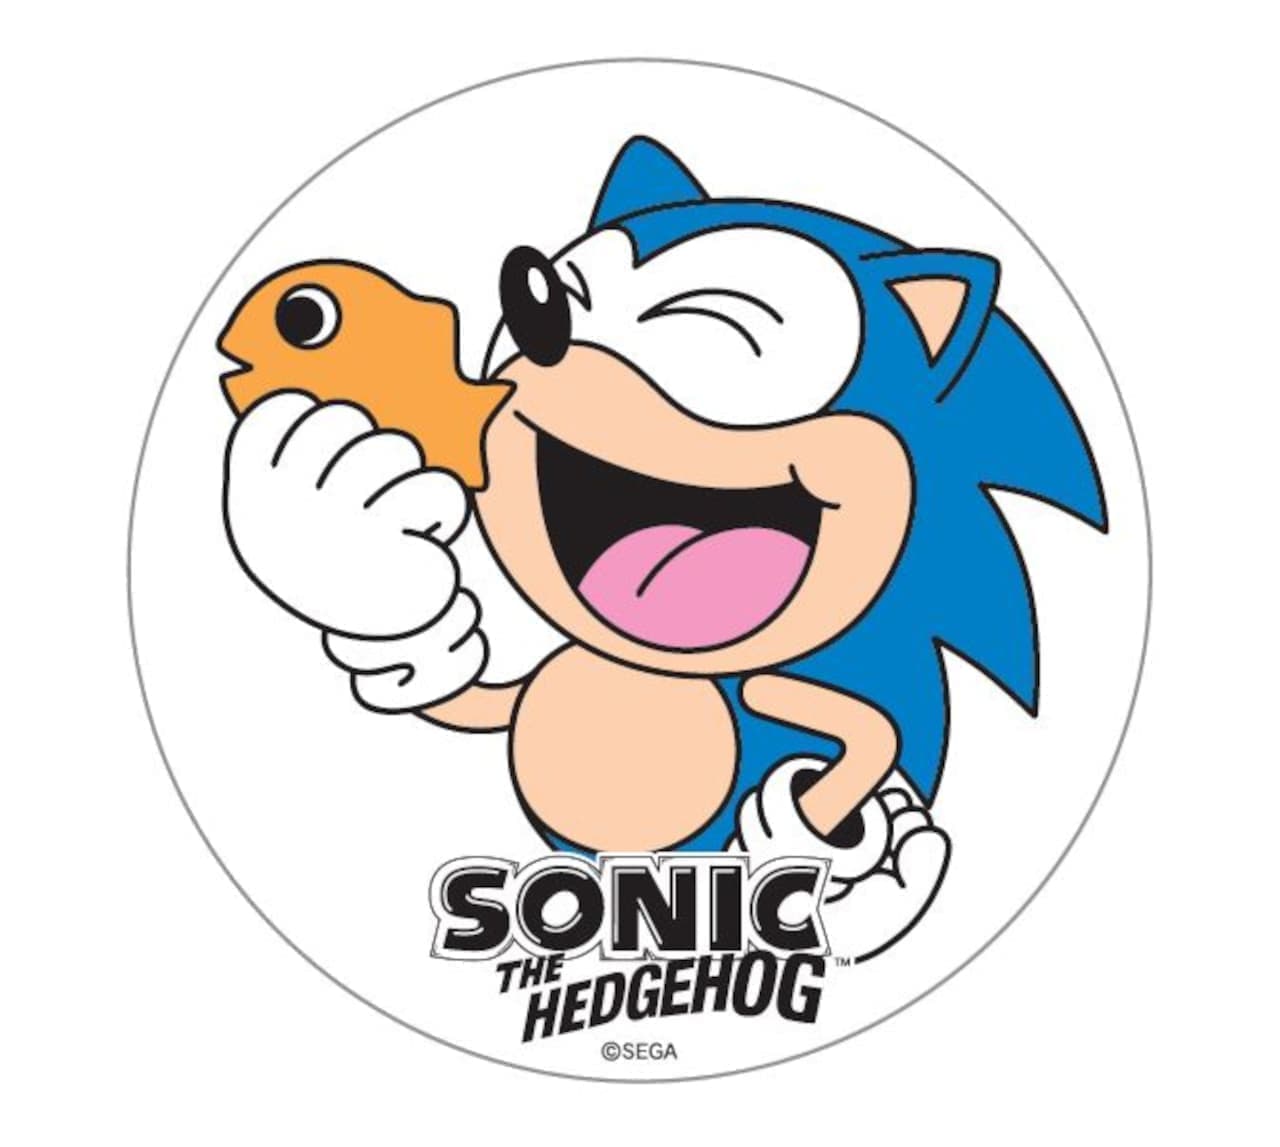 Sega "Sonic the Hedgehog Grilled"